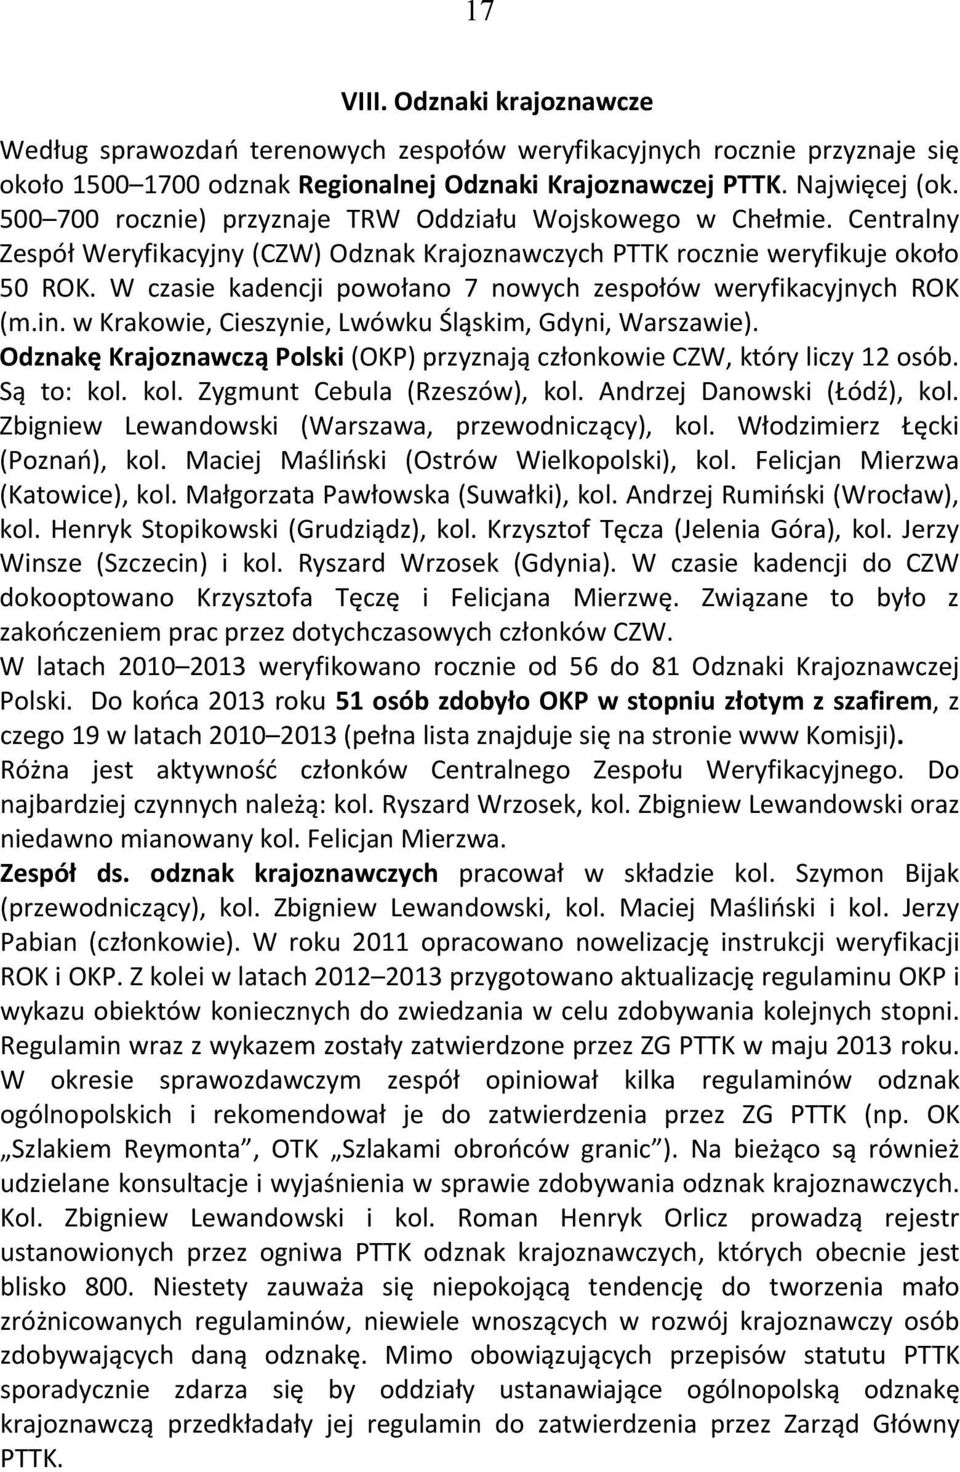 W czasie kadencji powołano 7 nowych zespołów weryfikacyjnych ROK (m.in. w Krakowie, Cieszynie, Lwówku Śląskim, Gdyni, Warszawie).